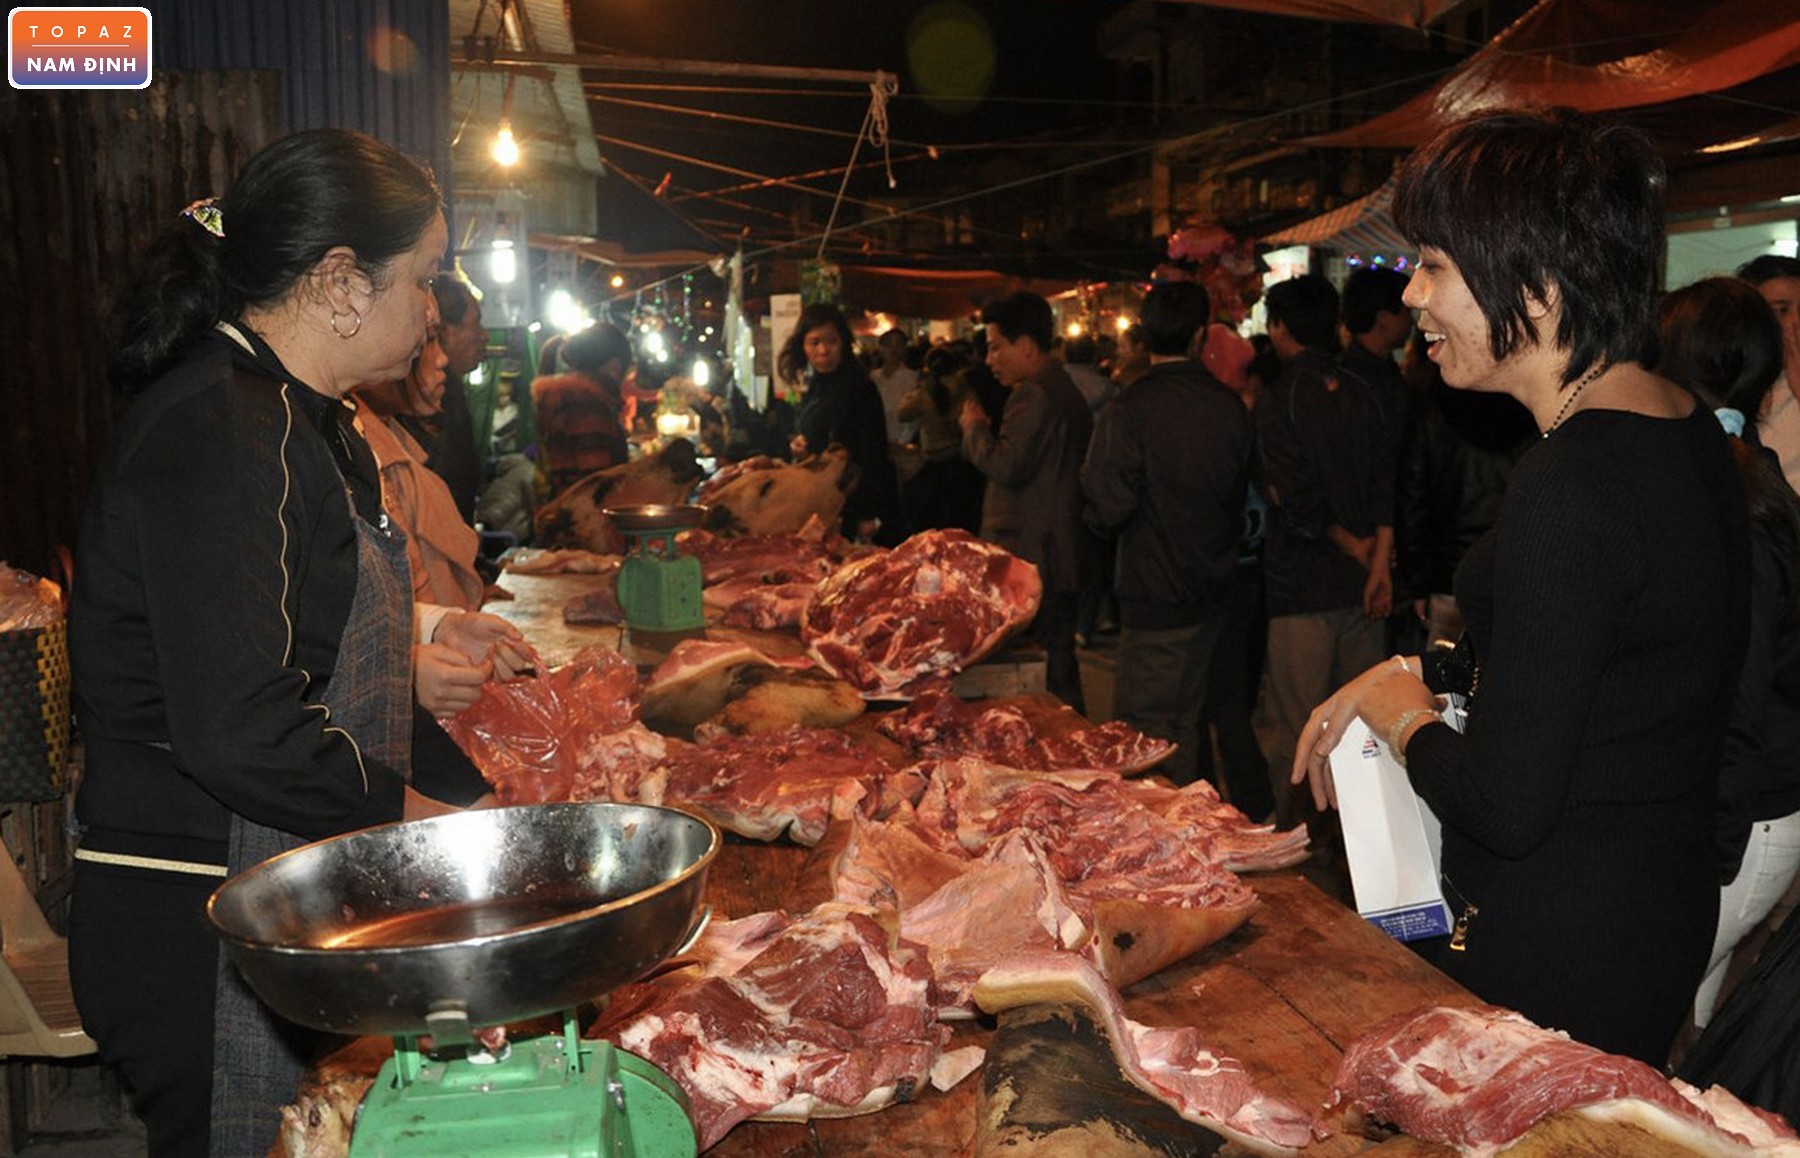 Đặc sản "thịt bò" món lộc đầu năm khi đến chợ Viềng Nam Định 